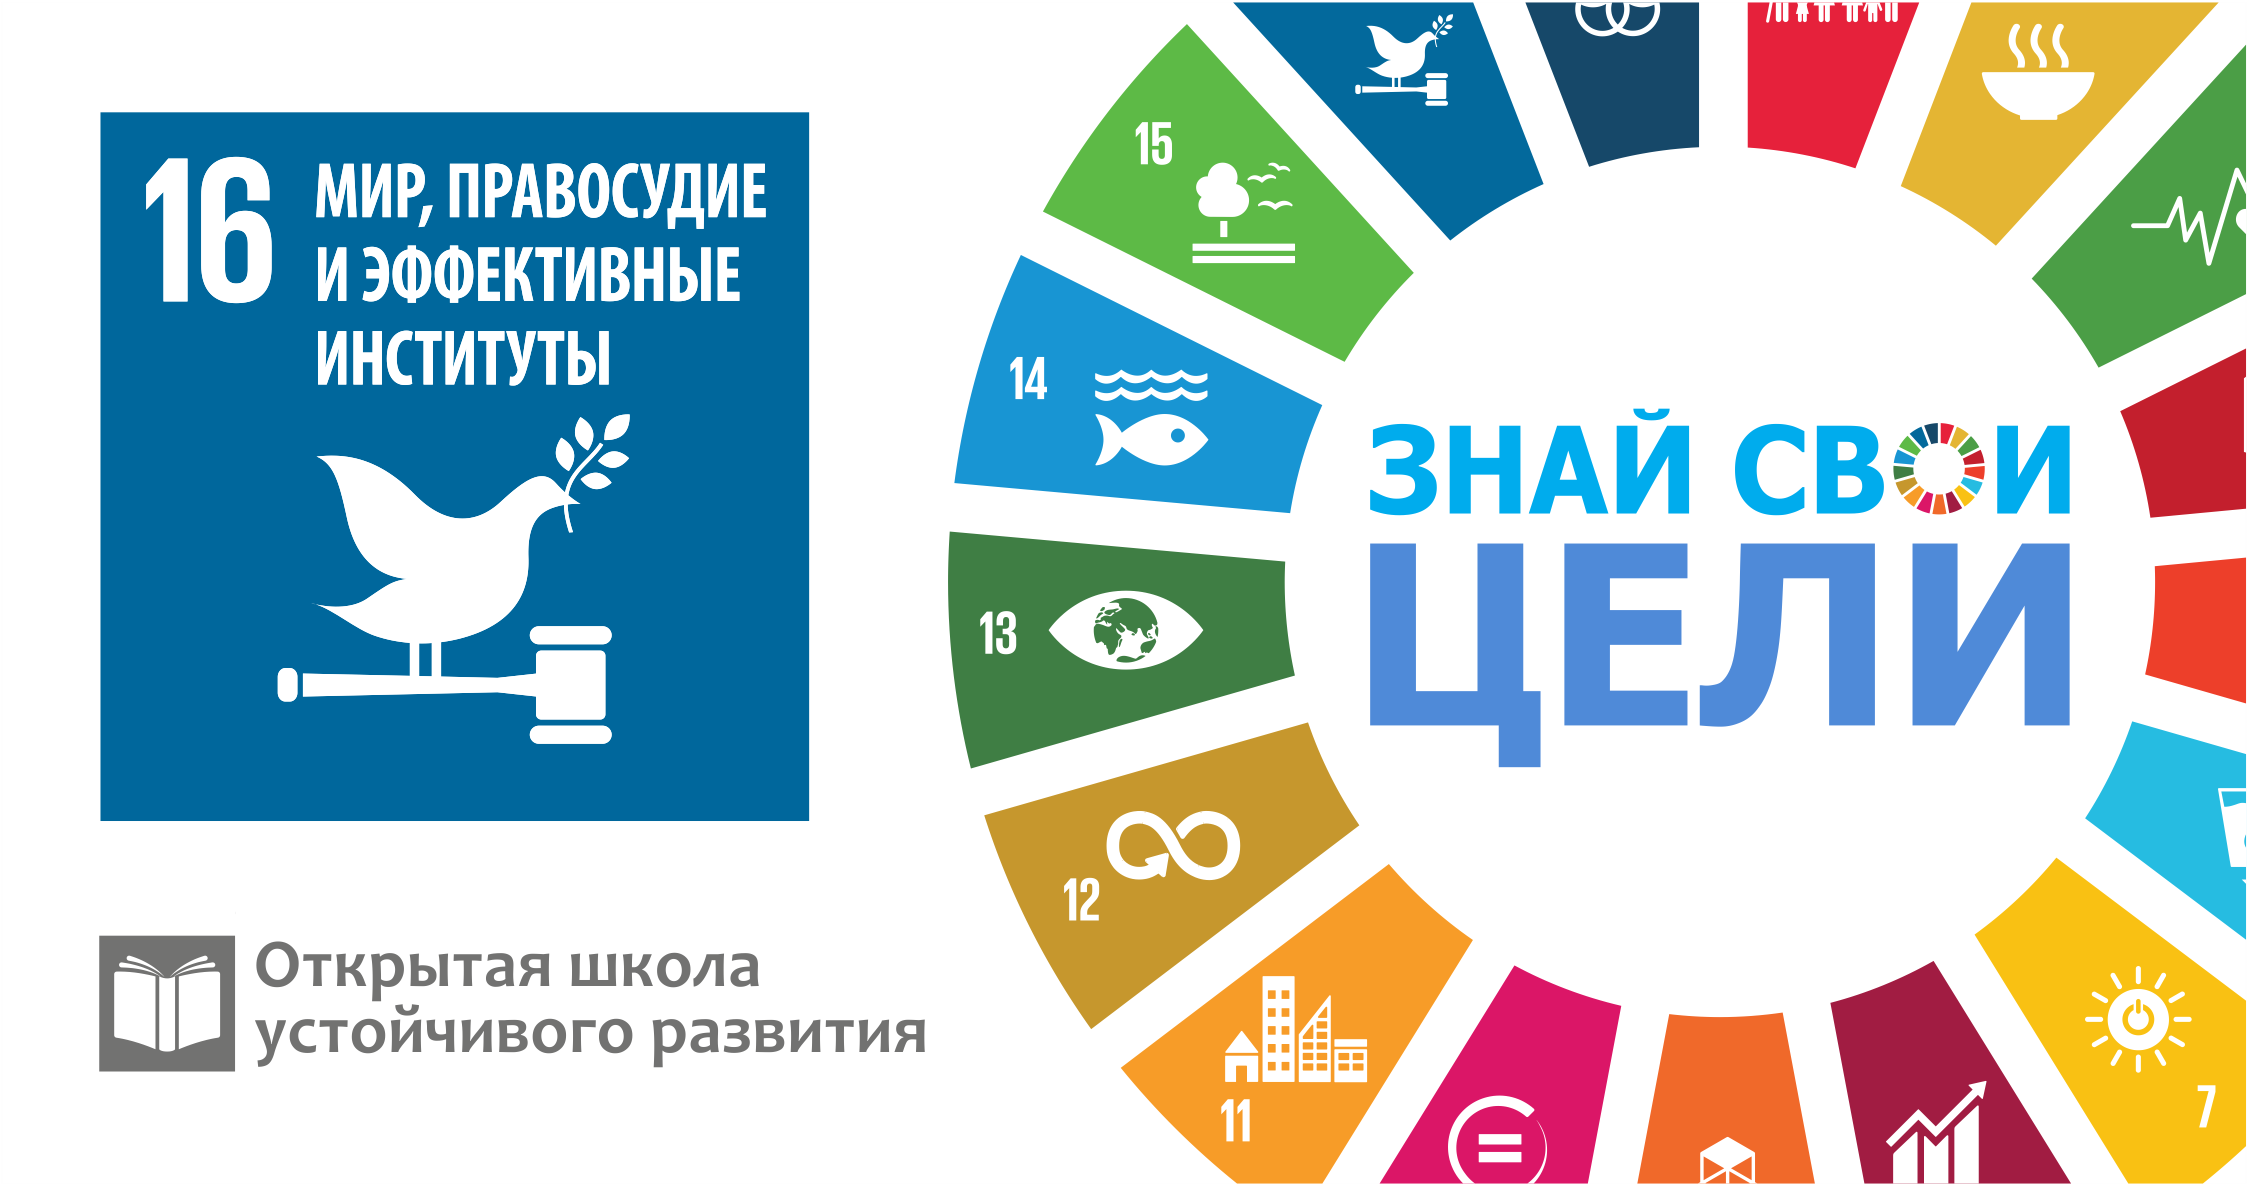 17 устойчивых целей оон. 17 Целей устойчивого развития ООН. Цели устойчивого развития. Цели устойчивого развития ООН. Цели в области устойчивого развития (ЦУР).